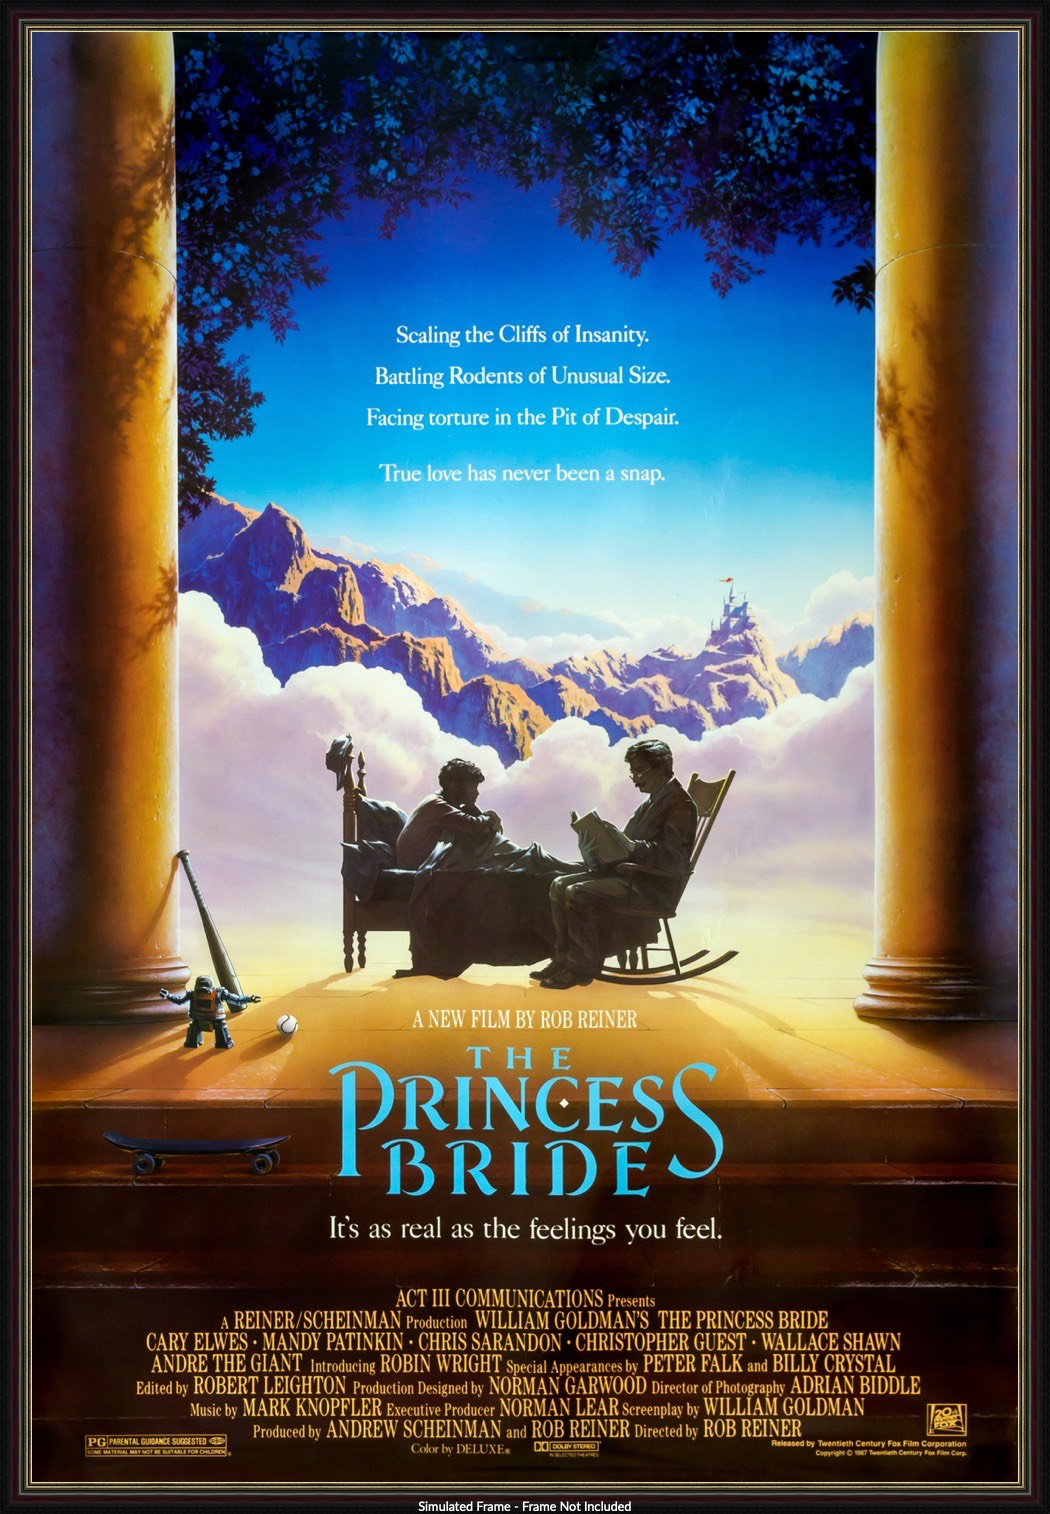 Princess Bride (1987) original movie poster for sale at Original Film Art